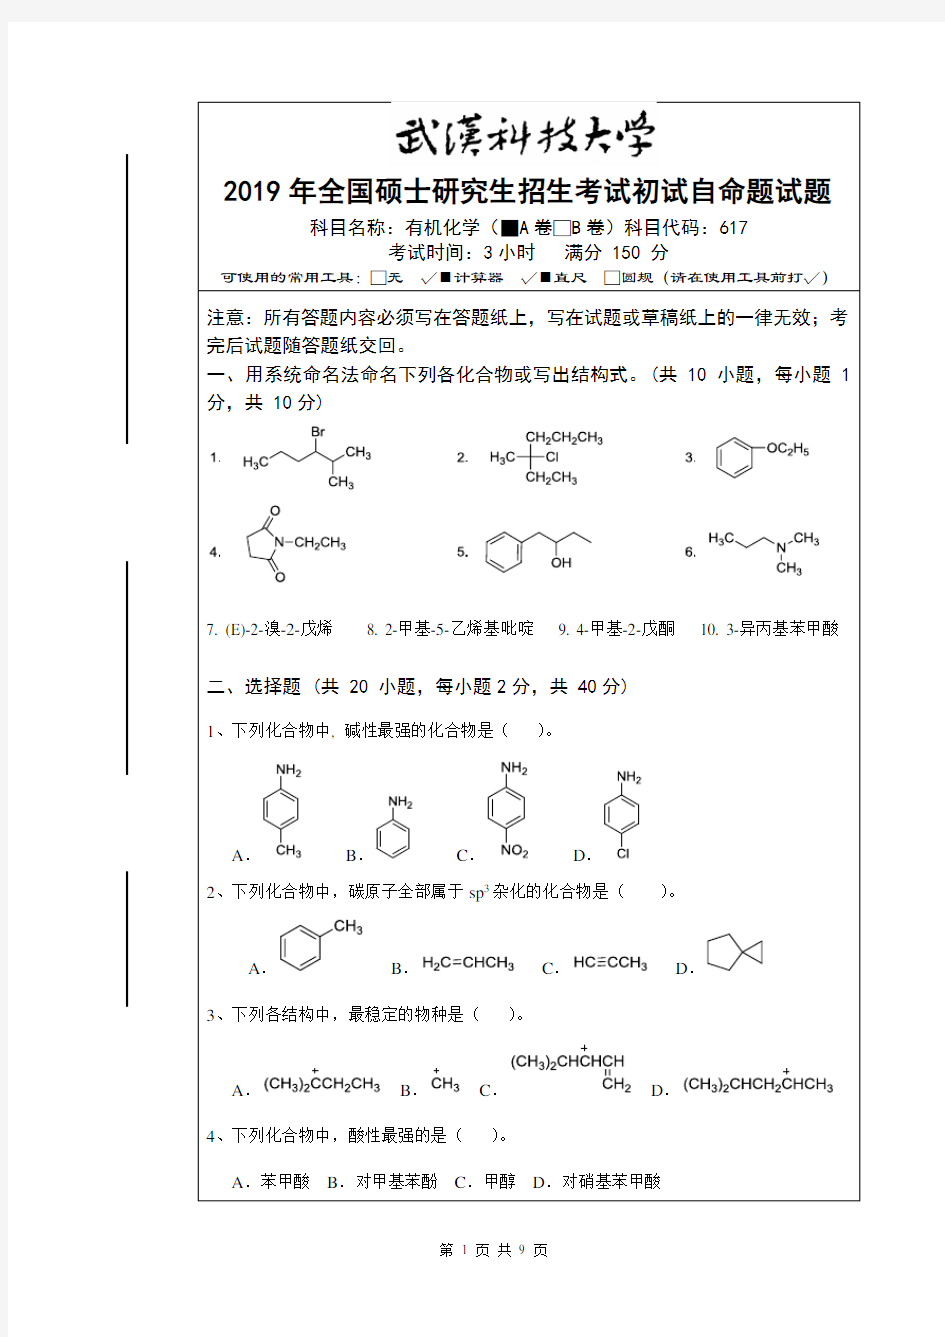 2019年武汉科技大学硕士研究生招生考试自命题试题-617有机化学_真题及答案